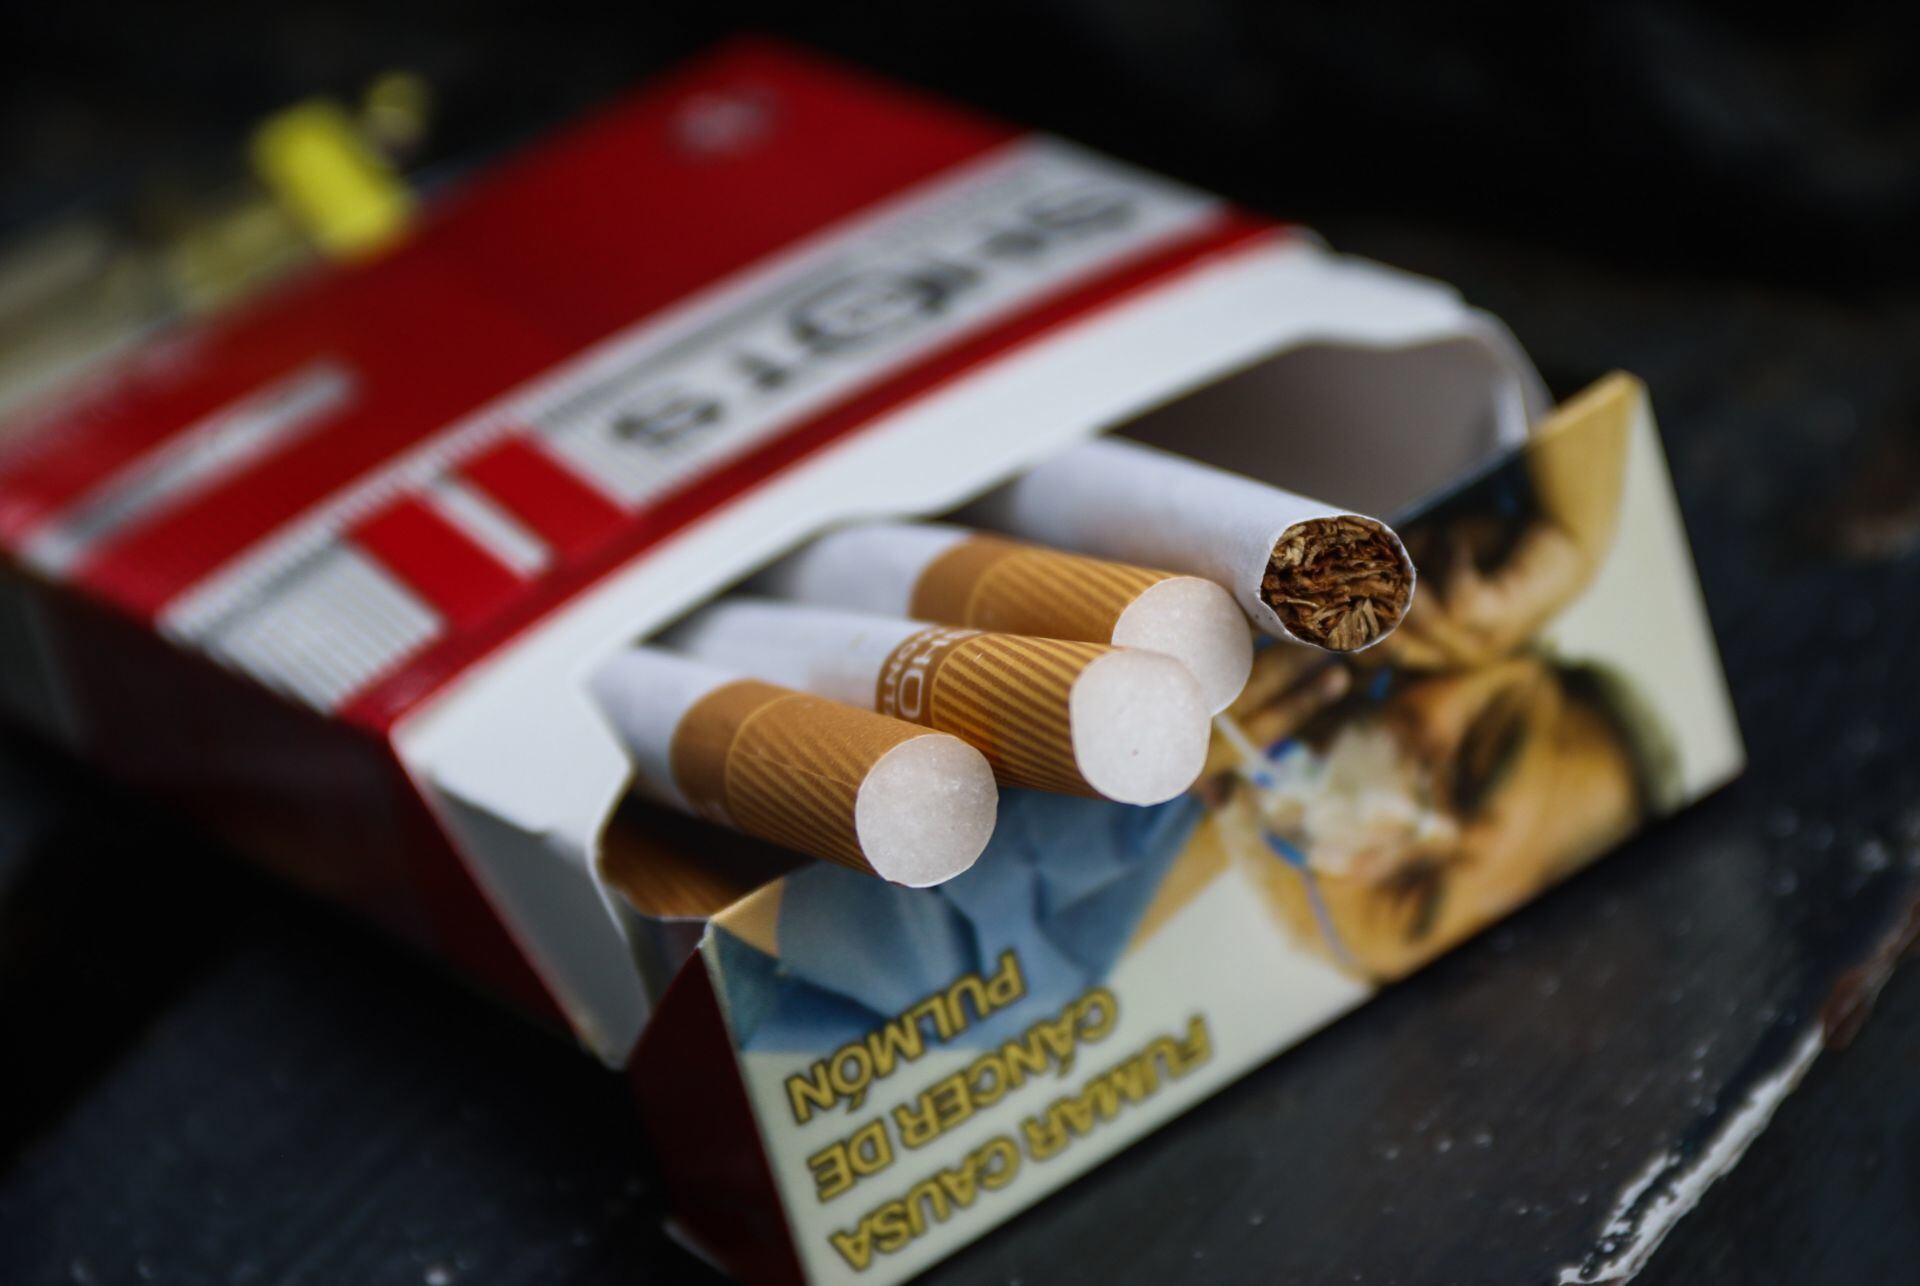 Ley antitabaco 2023: Comerciantes obtienen 20 amparos contra prohibición para exhibir cigarros